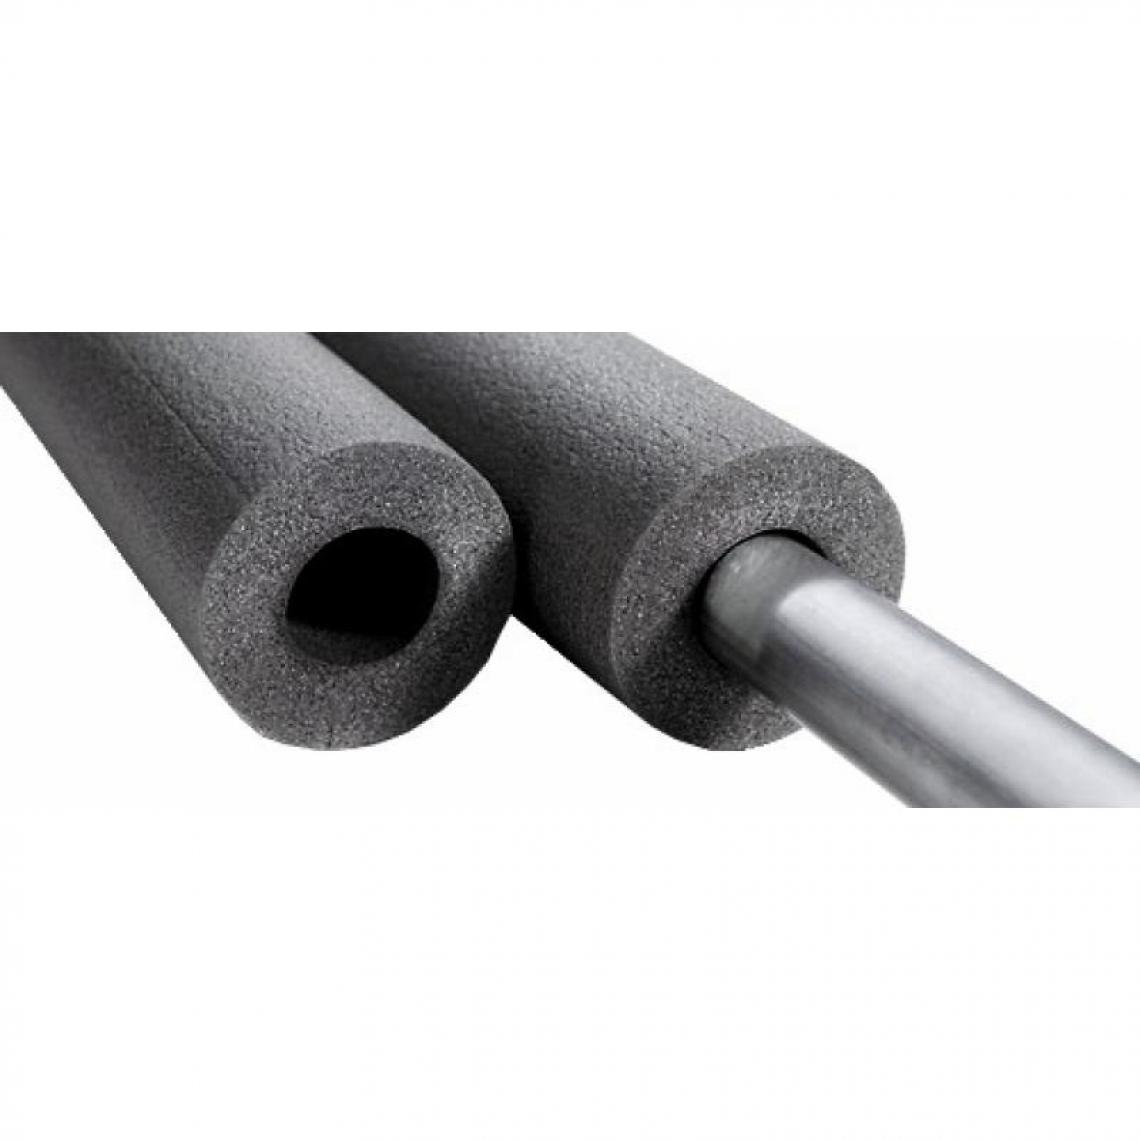 NMC - Tube isolant préfendu Climaflex, épaisseur 20 mm, longueur 2 m, pour tuyaux diamètre 35 - Coudes et raccords PVC